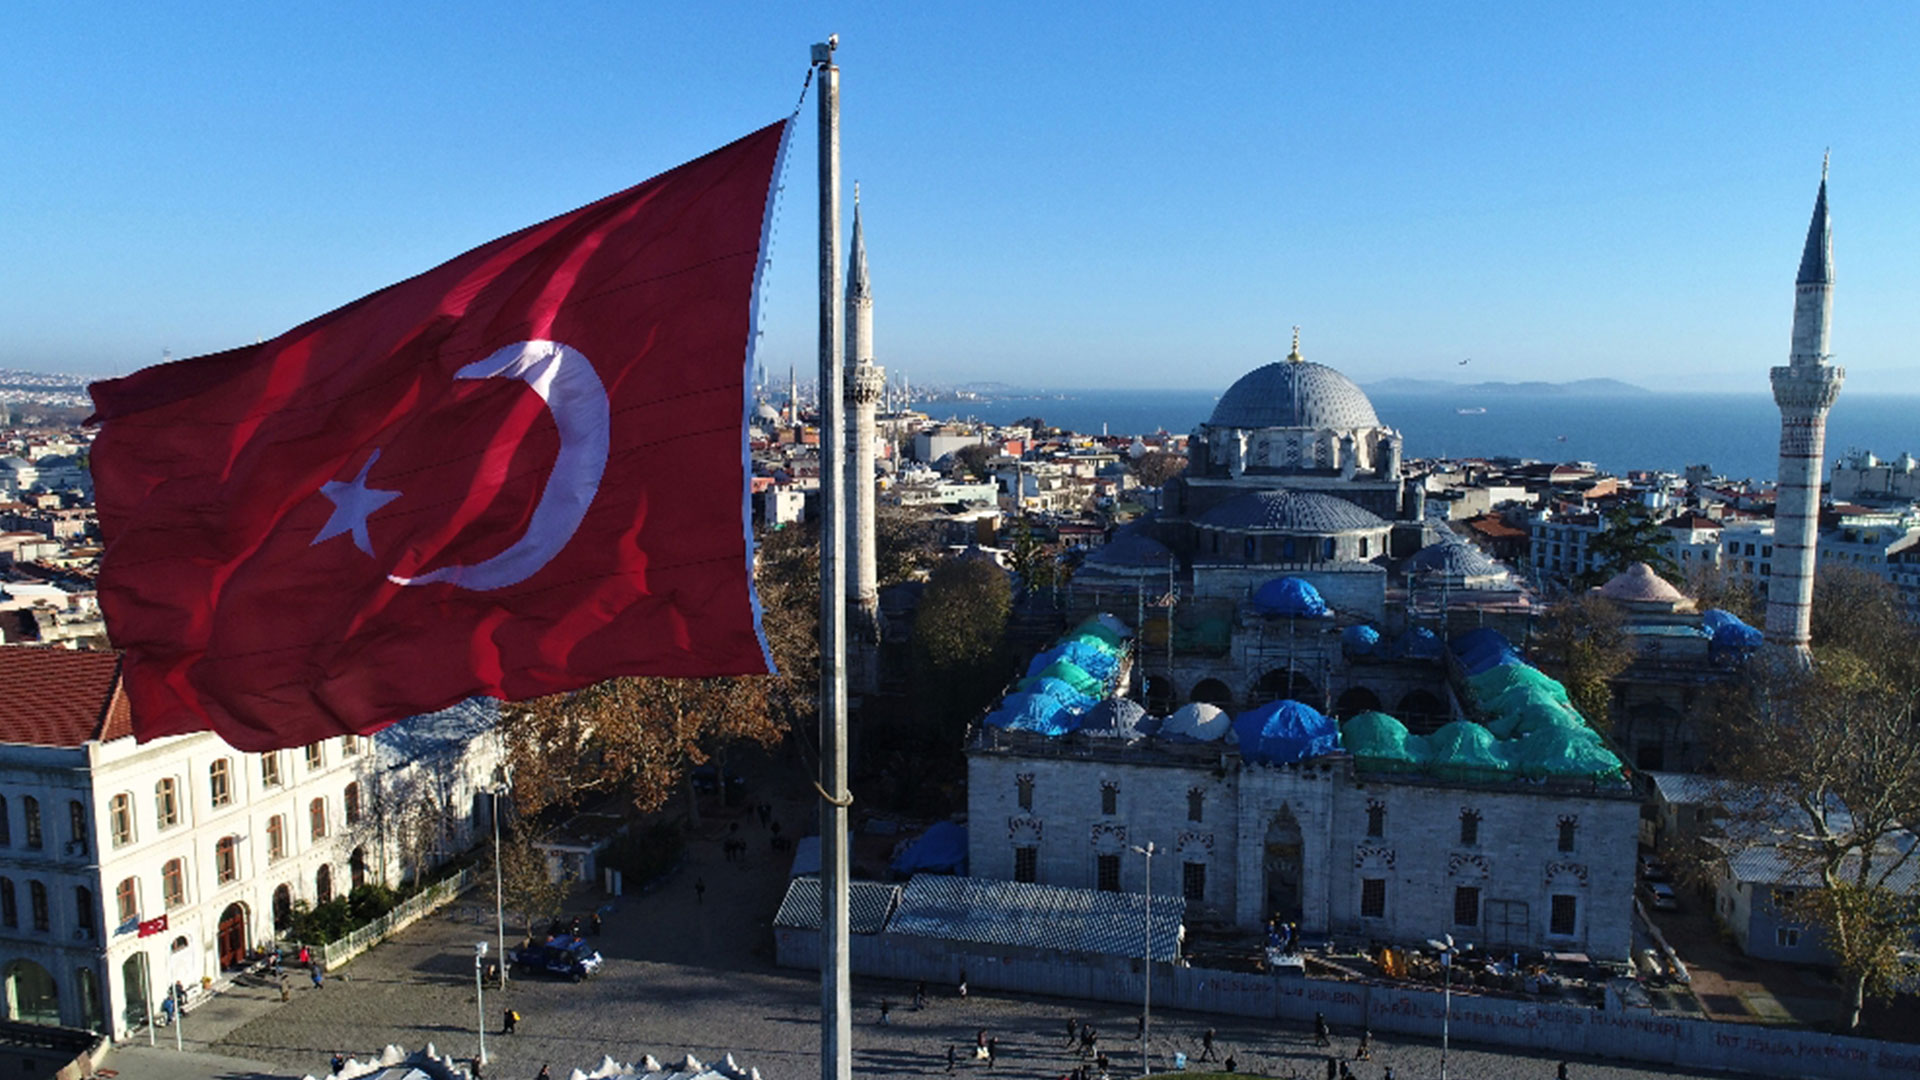 en guzel turk bayrakli manzarali camiler 11